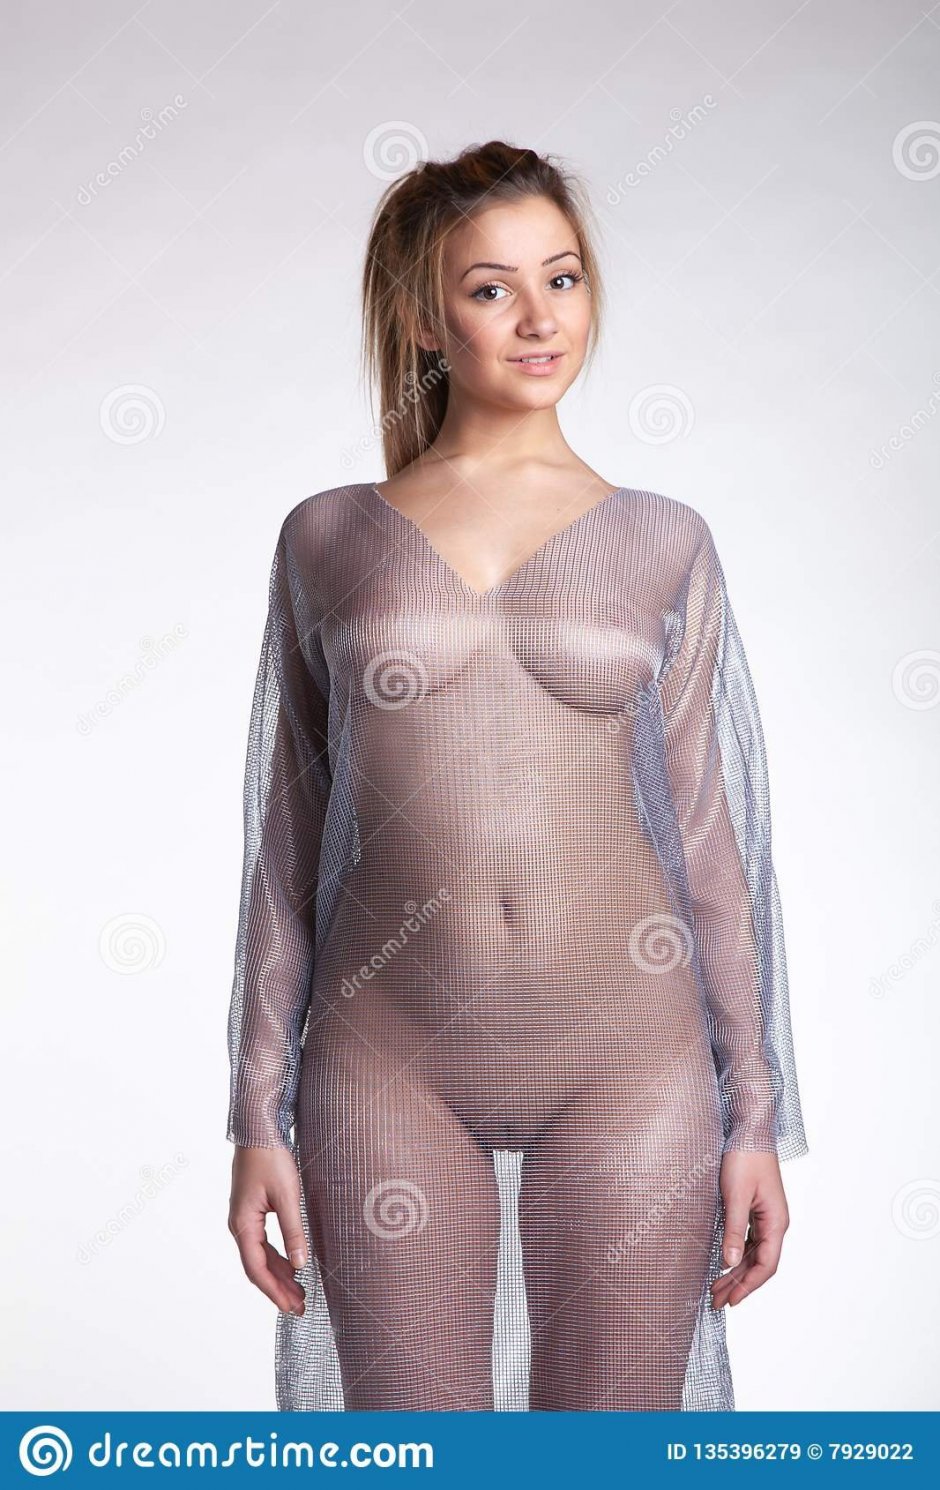 Transparent dress porn